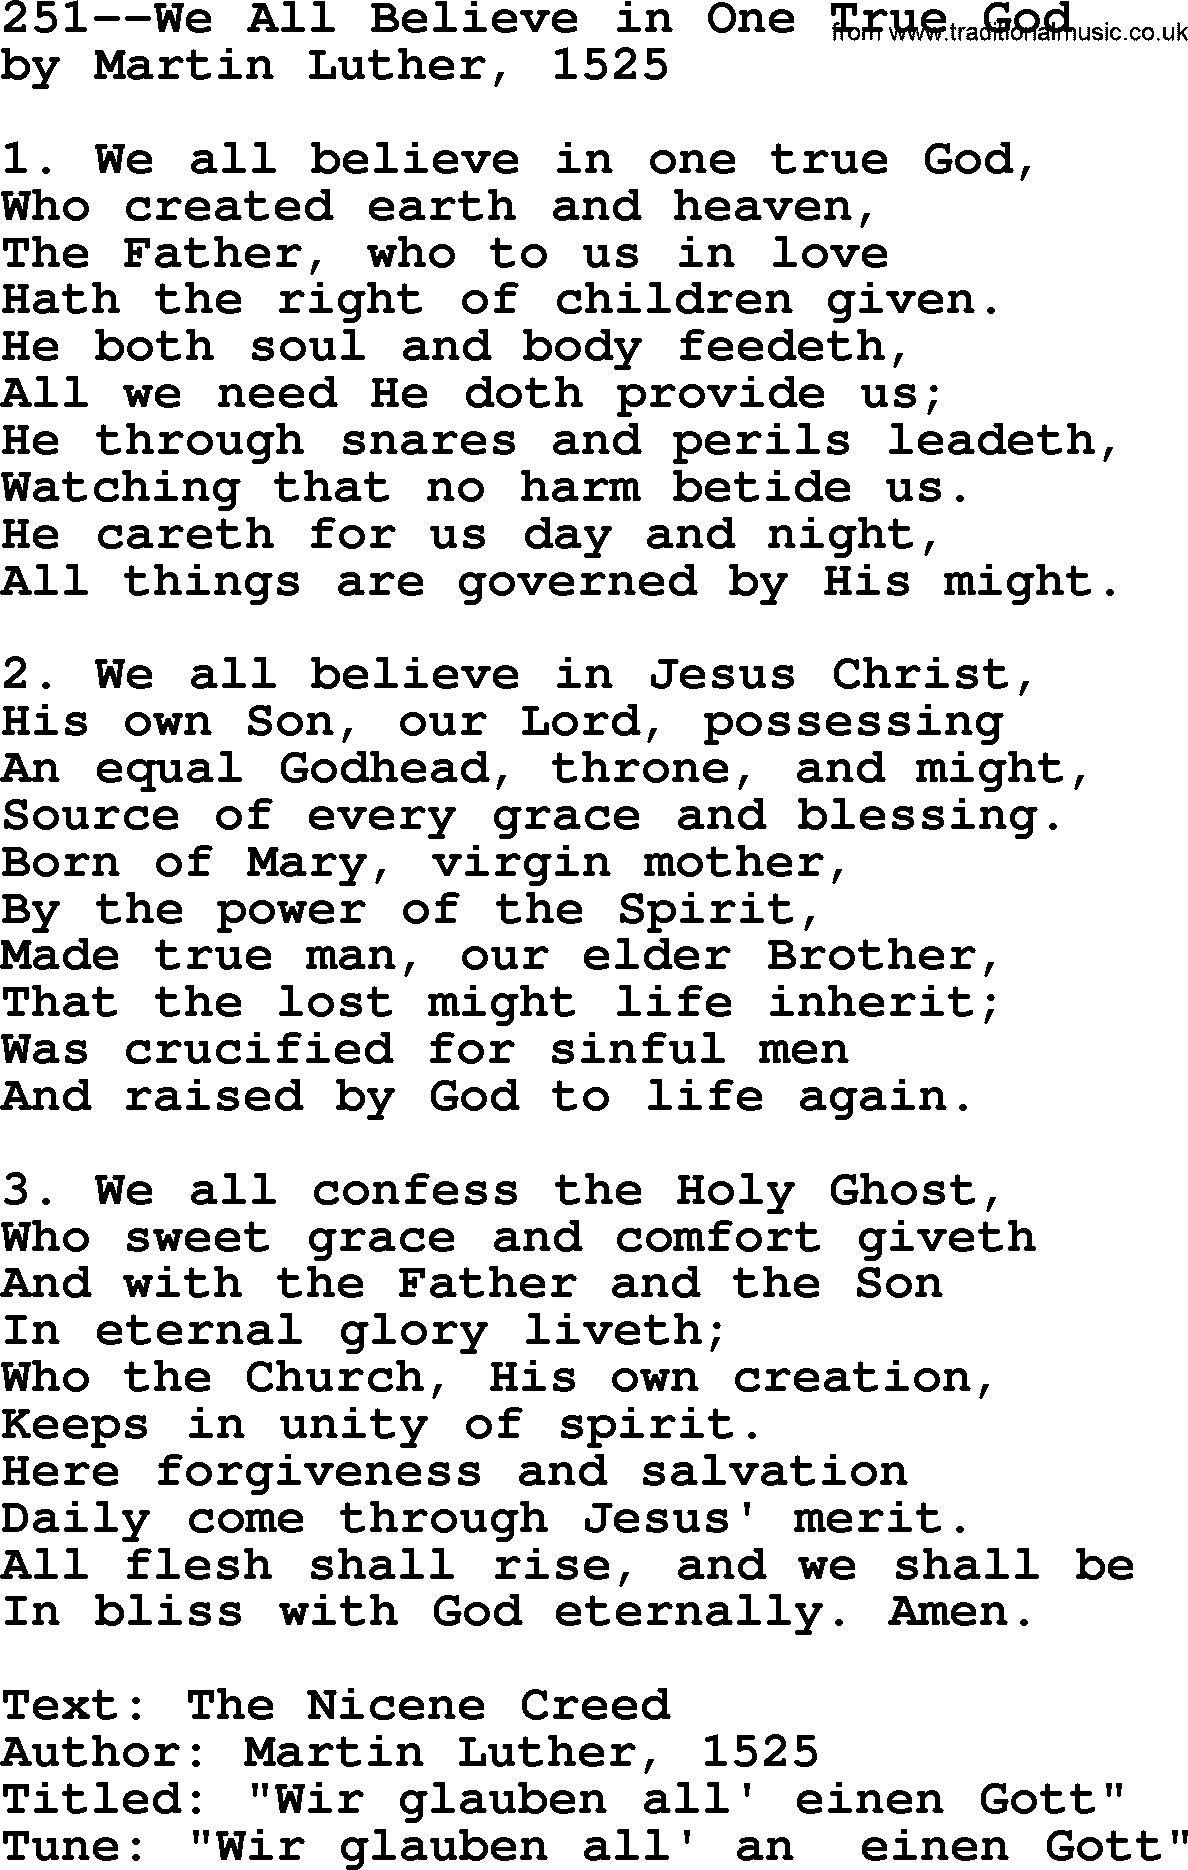 Lutheran Hymn: 251--We All Believe in One True God.txt lyrics with PDF